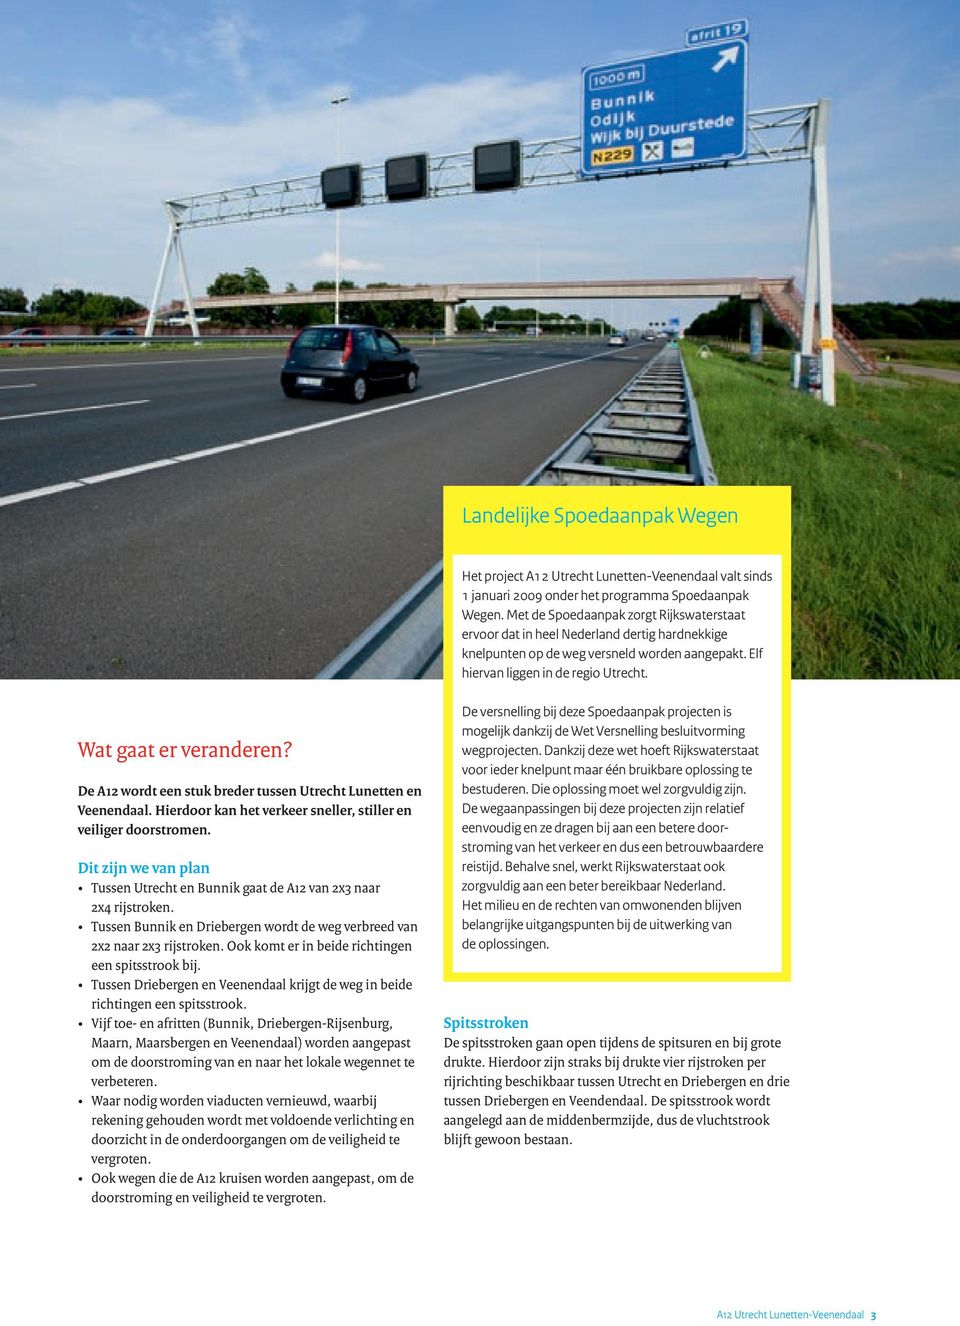 De A12 wordt een stuk breder tussen Utrecht Lunetten en Veenendaal. Hierdoor kan het verkeer sneller, stiller en veiliger doorstromen.